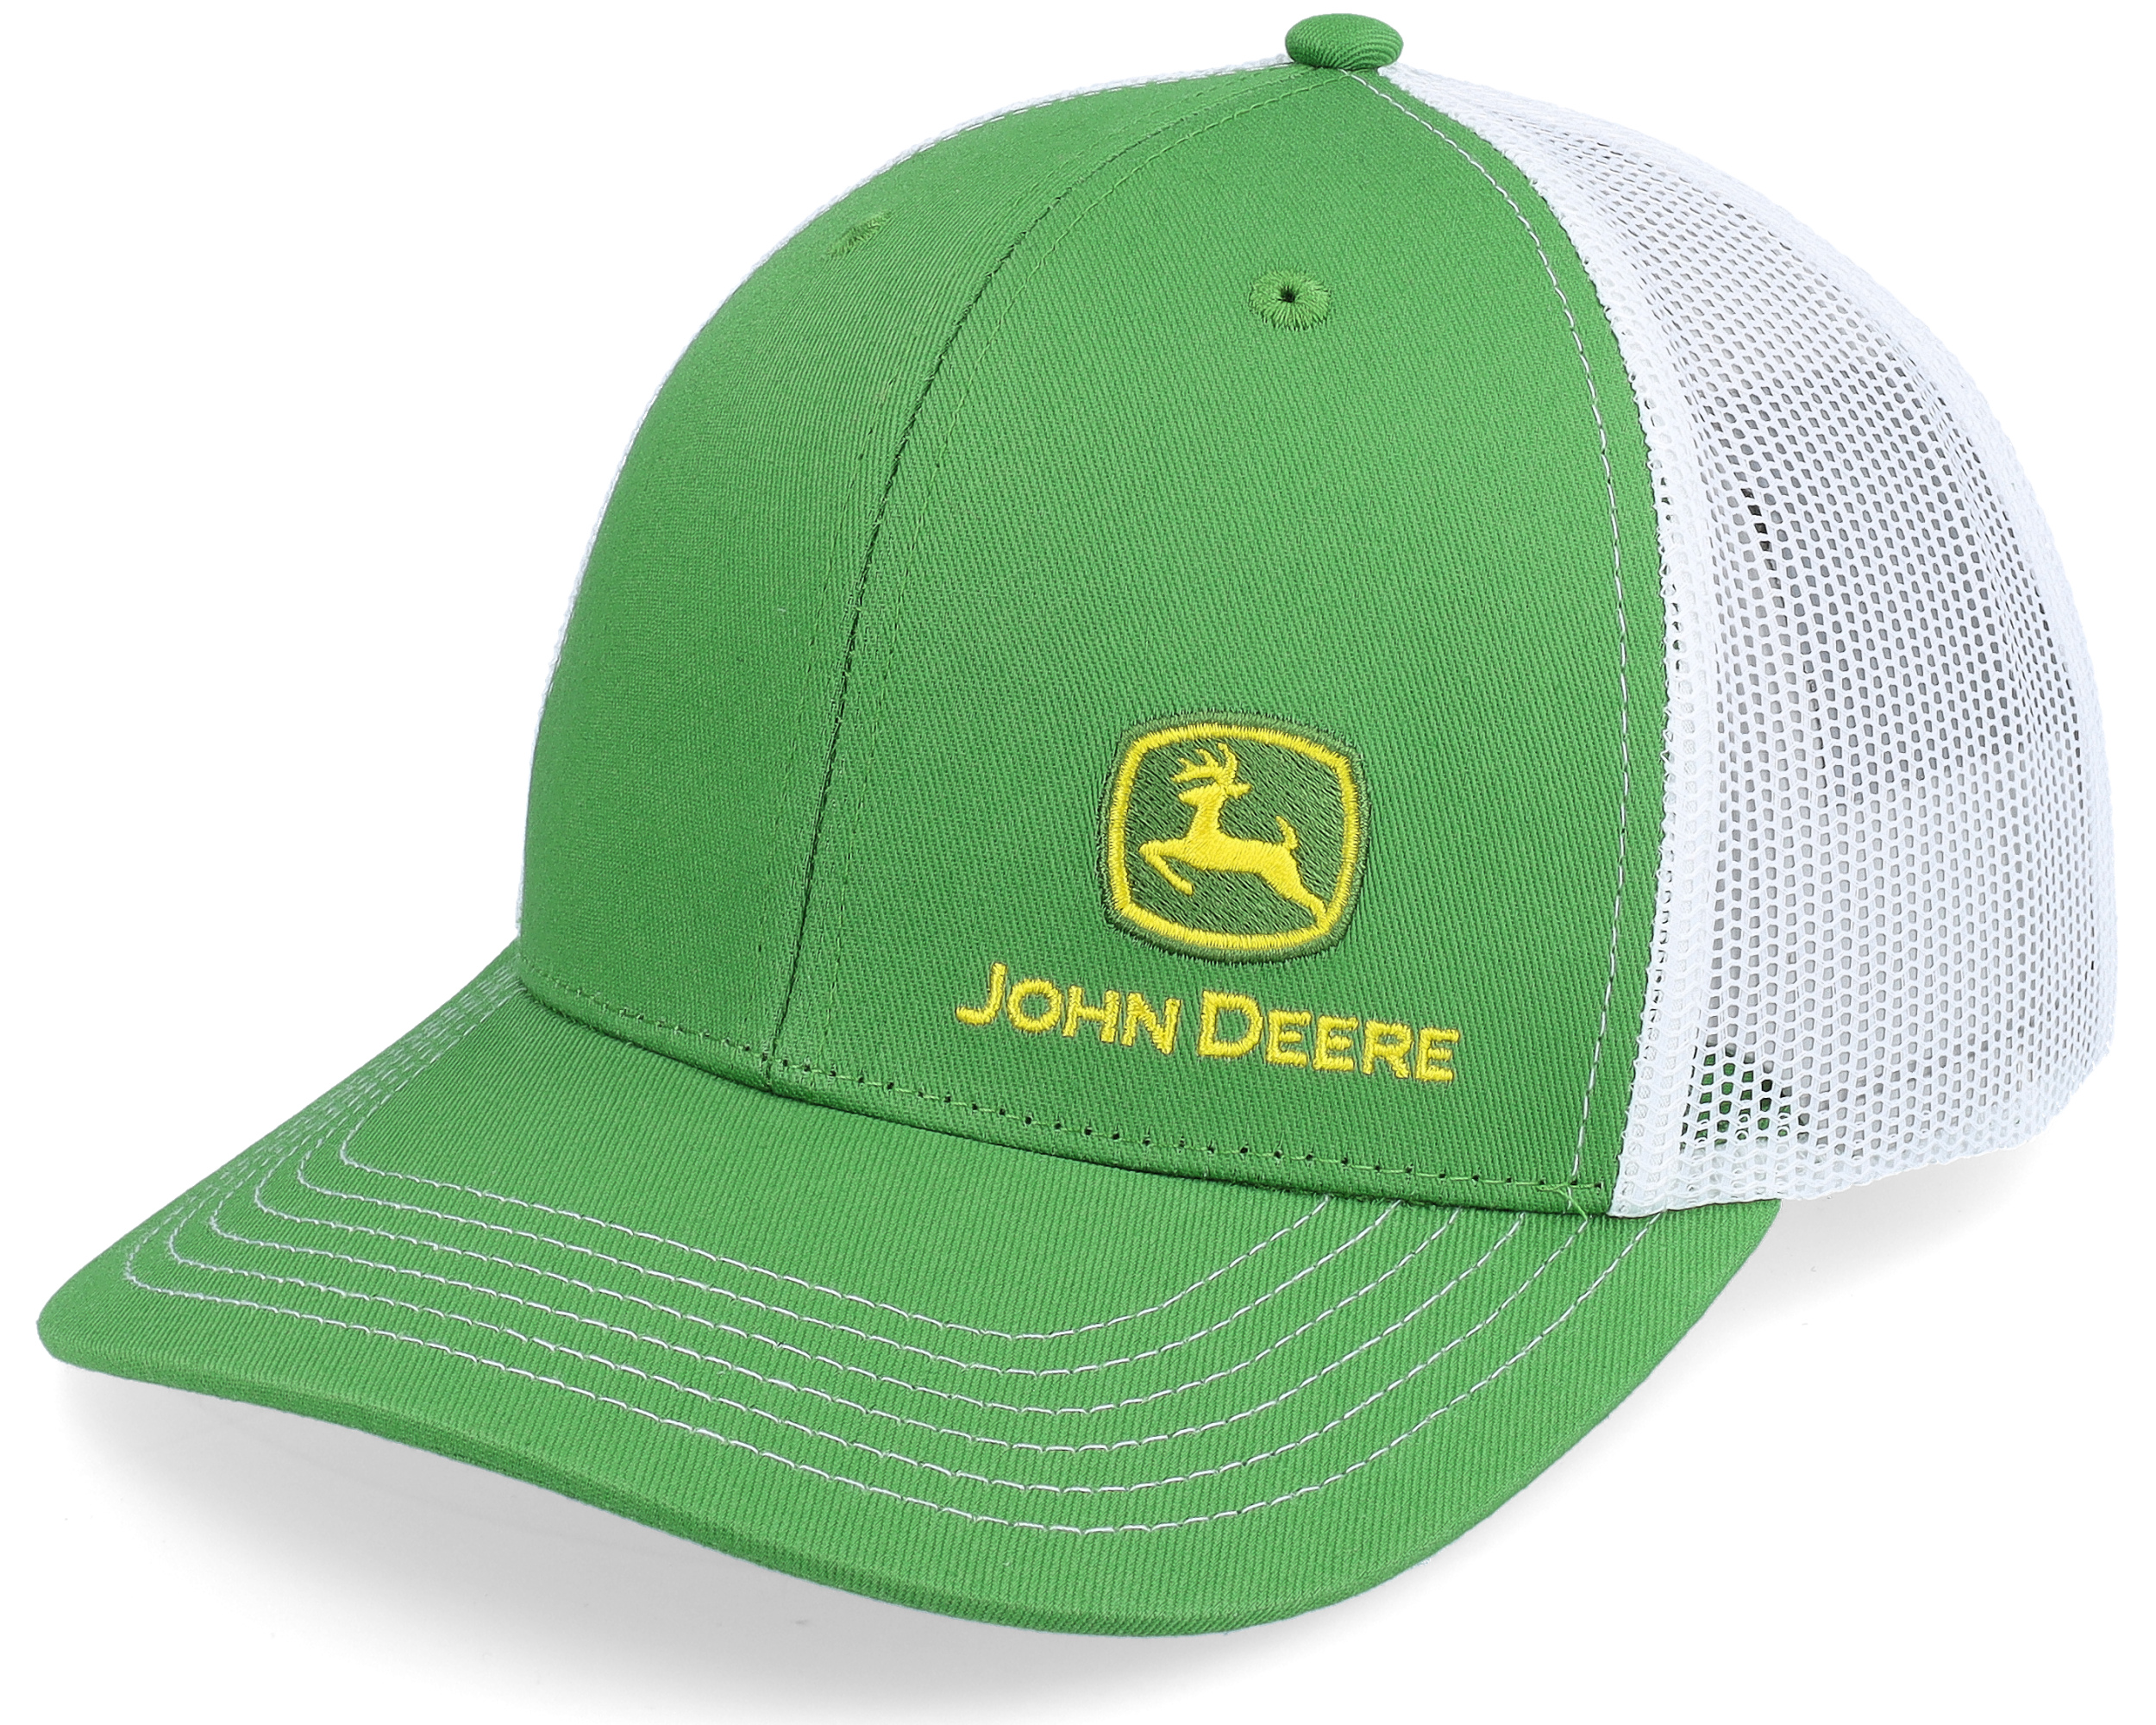 Moline Cap Green/White Trucker - John Deere - Gorra